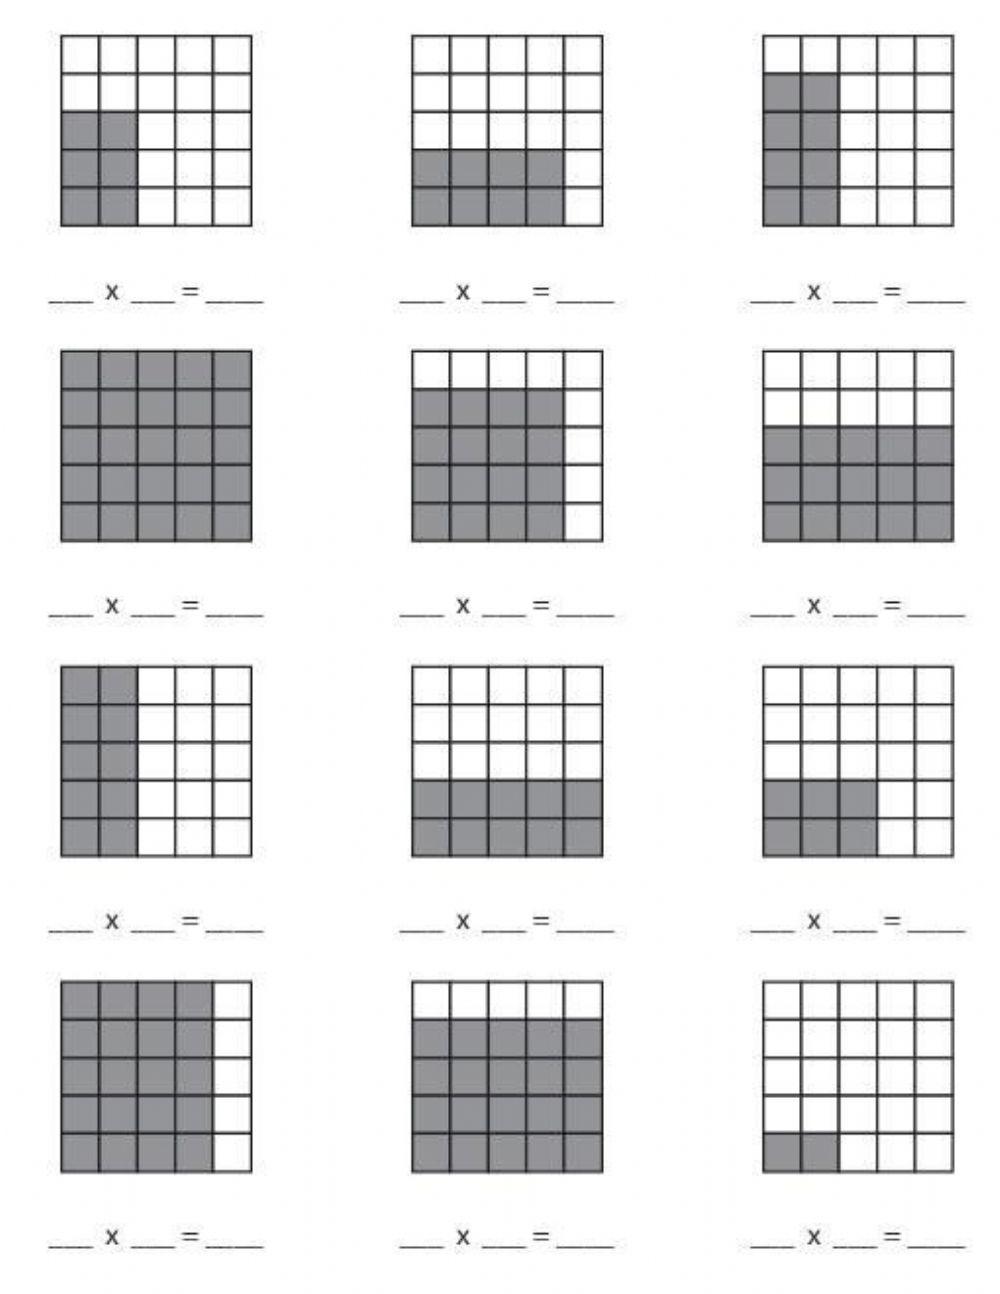 Multiplicacions i rectangles